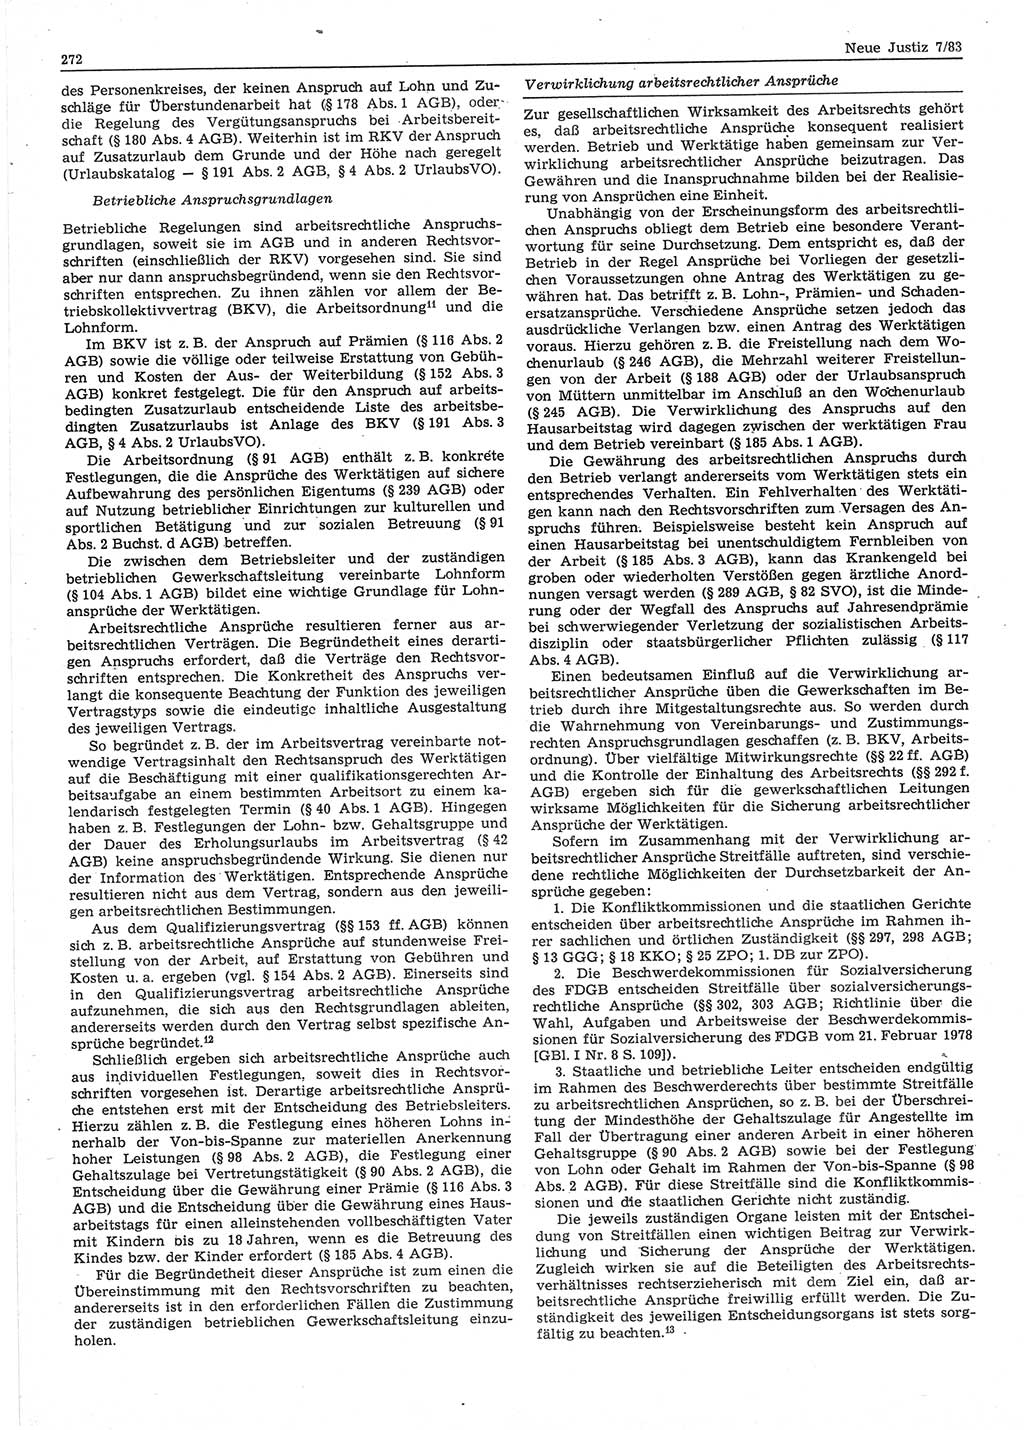 Neue Justiz (NJ), Zeitschrift für sozialistisches Recht und Gesetzlichkeit [Deutsche Demokratische Republik (DDR)], 37. Jahrgang 1983, Seite 272 (NJ DDR 1983, S. 272)